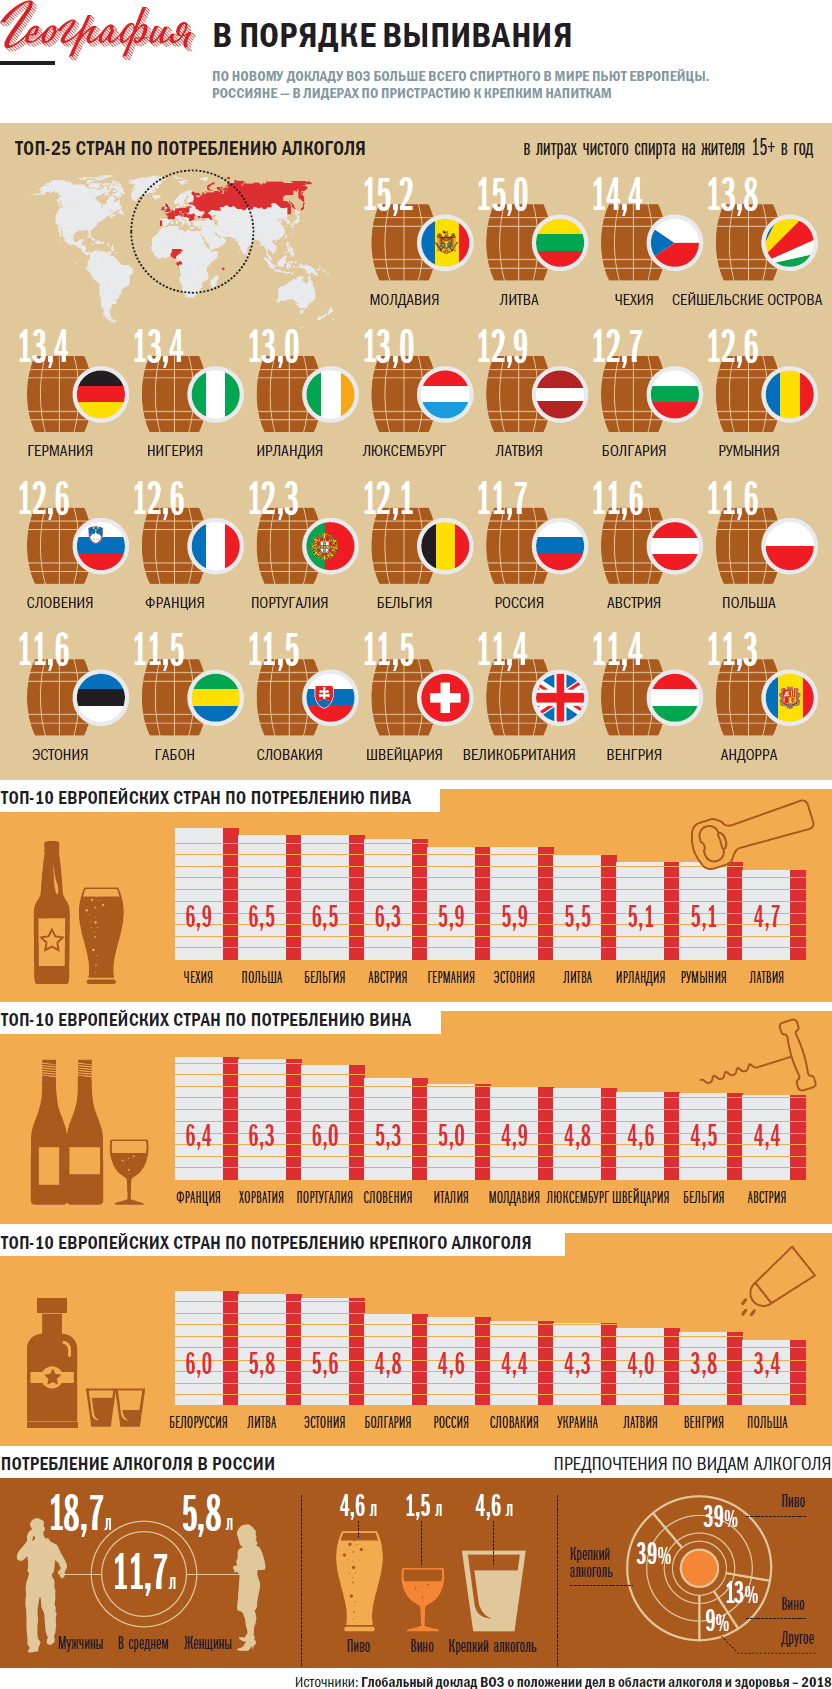 Какое место по потреблению алкоголя занимает Беларусь на самом деле?